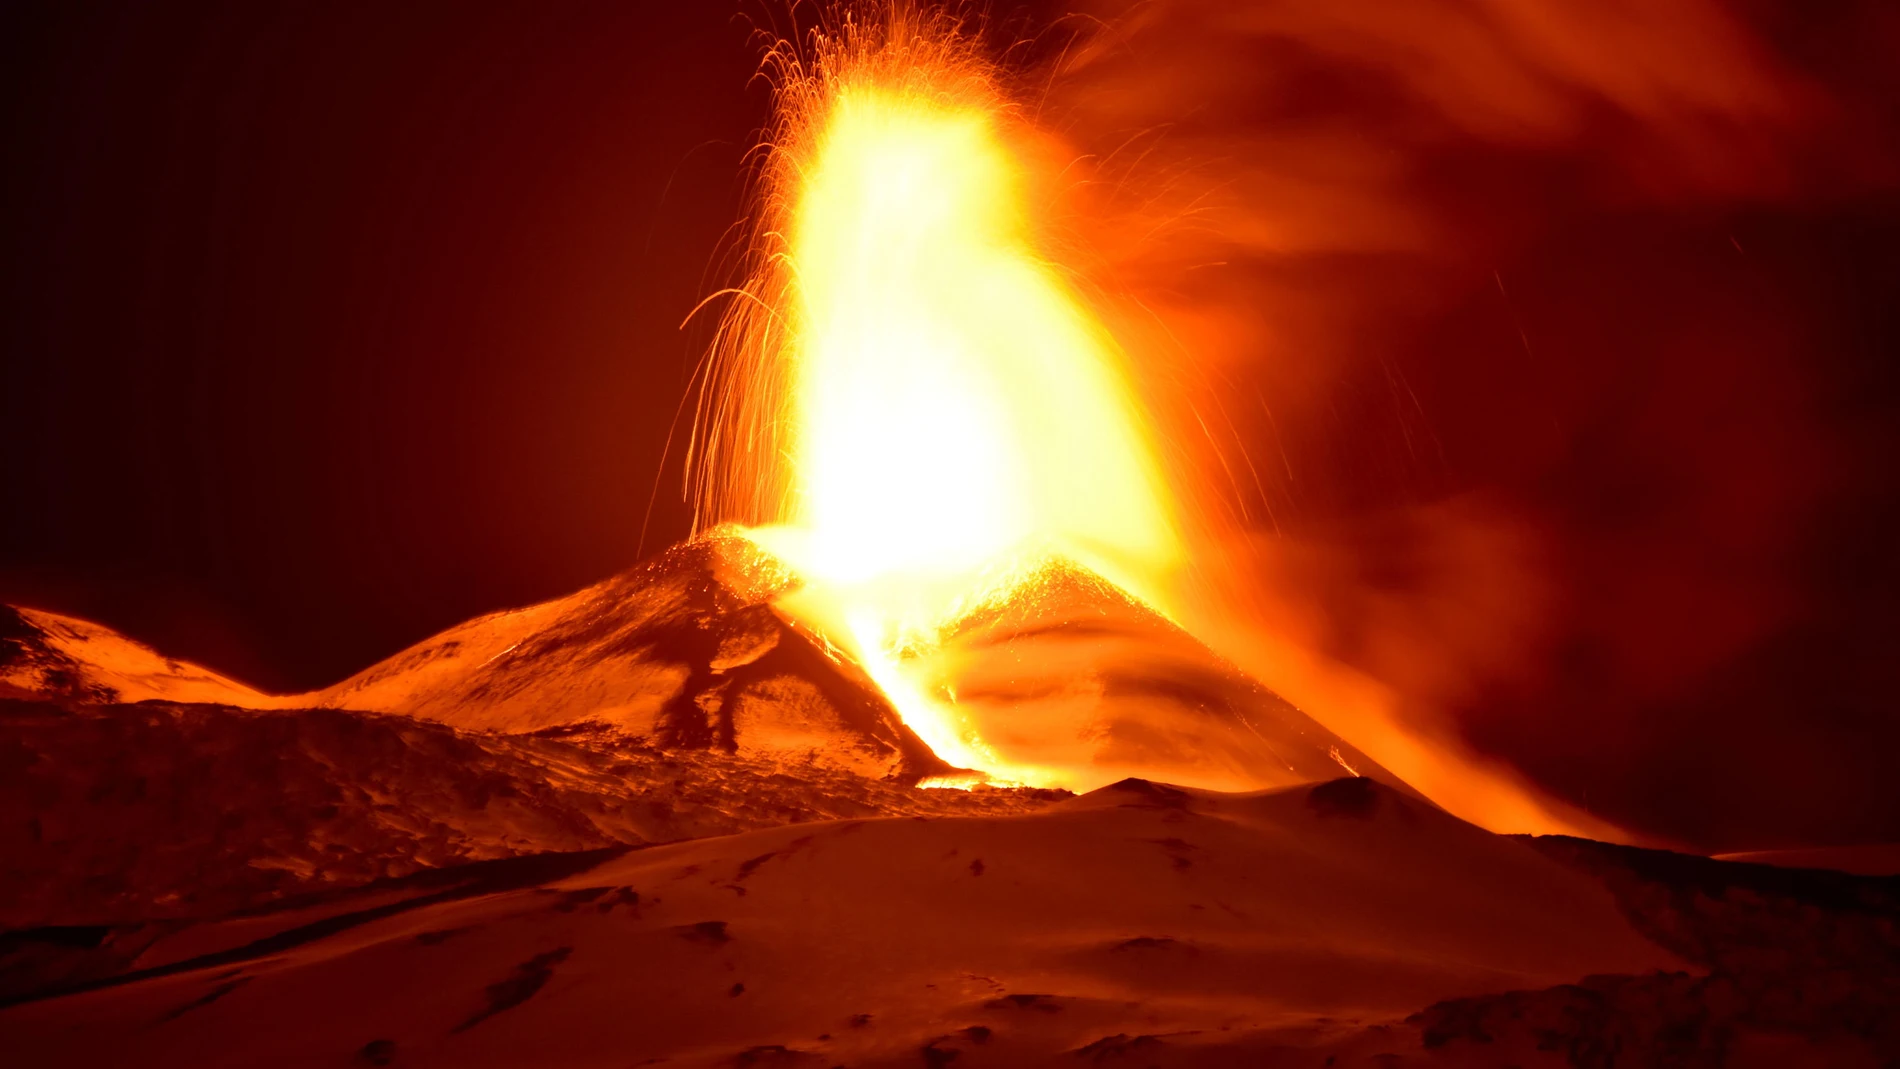 Entra en erupción el Etna, el volcán activo más grande de Europa situado en Sicilia